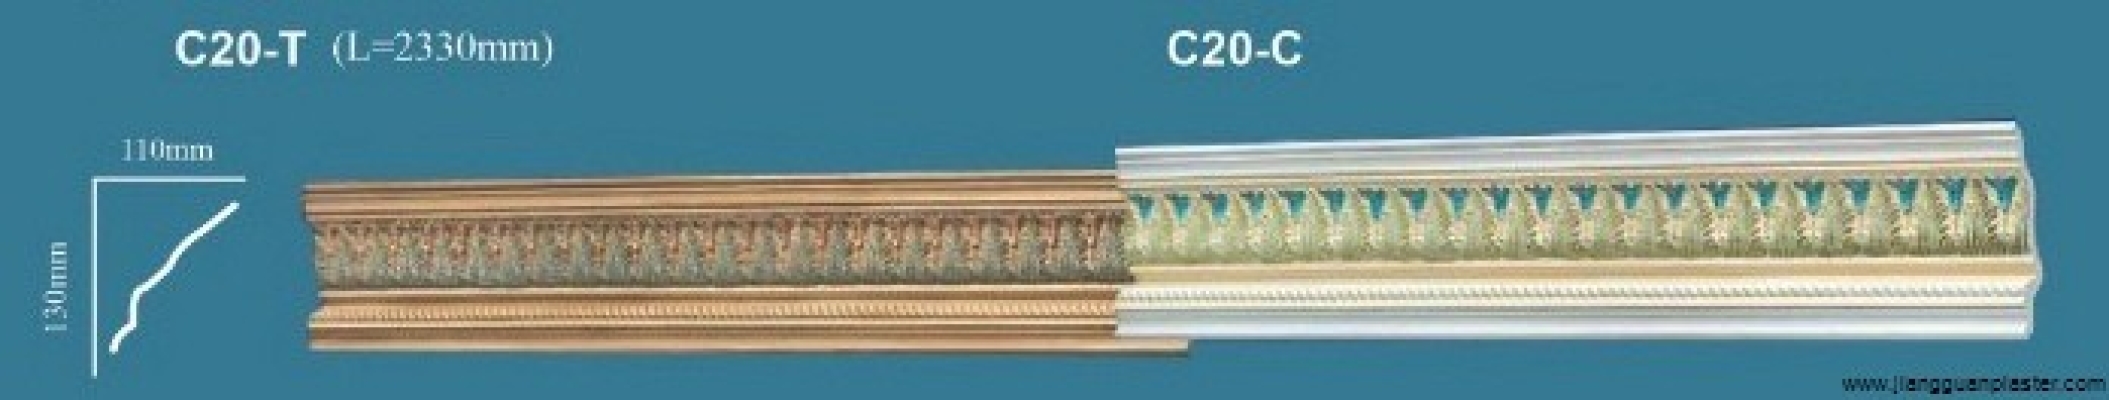 Colorful Plaster Ceiling Cornice : C20-T C20-C